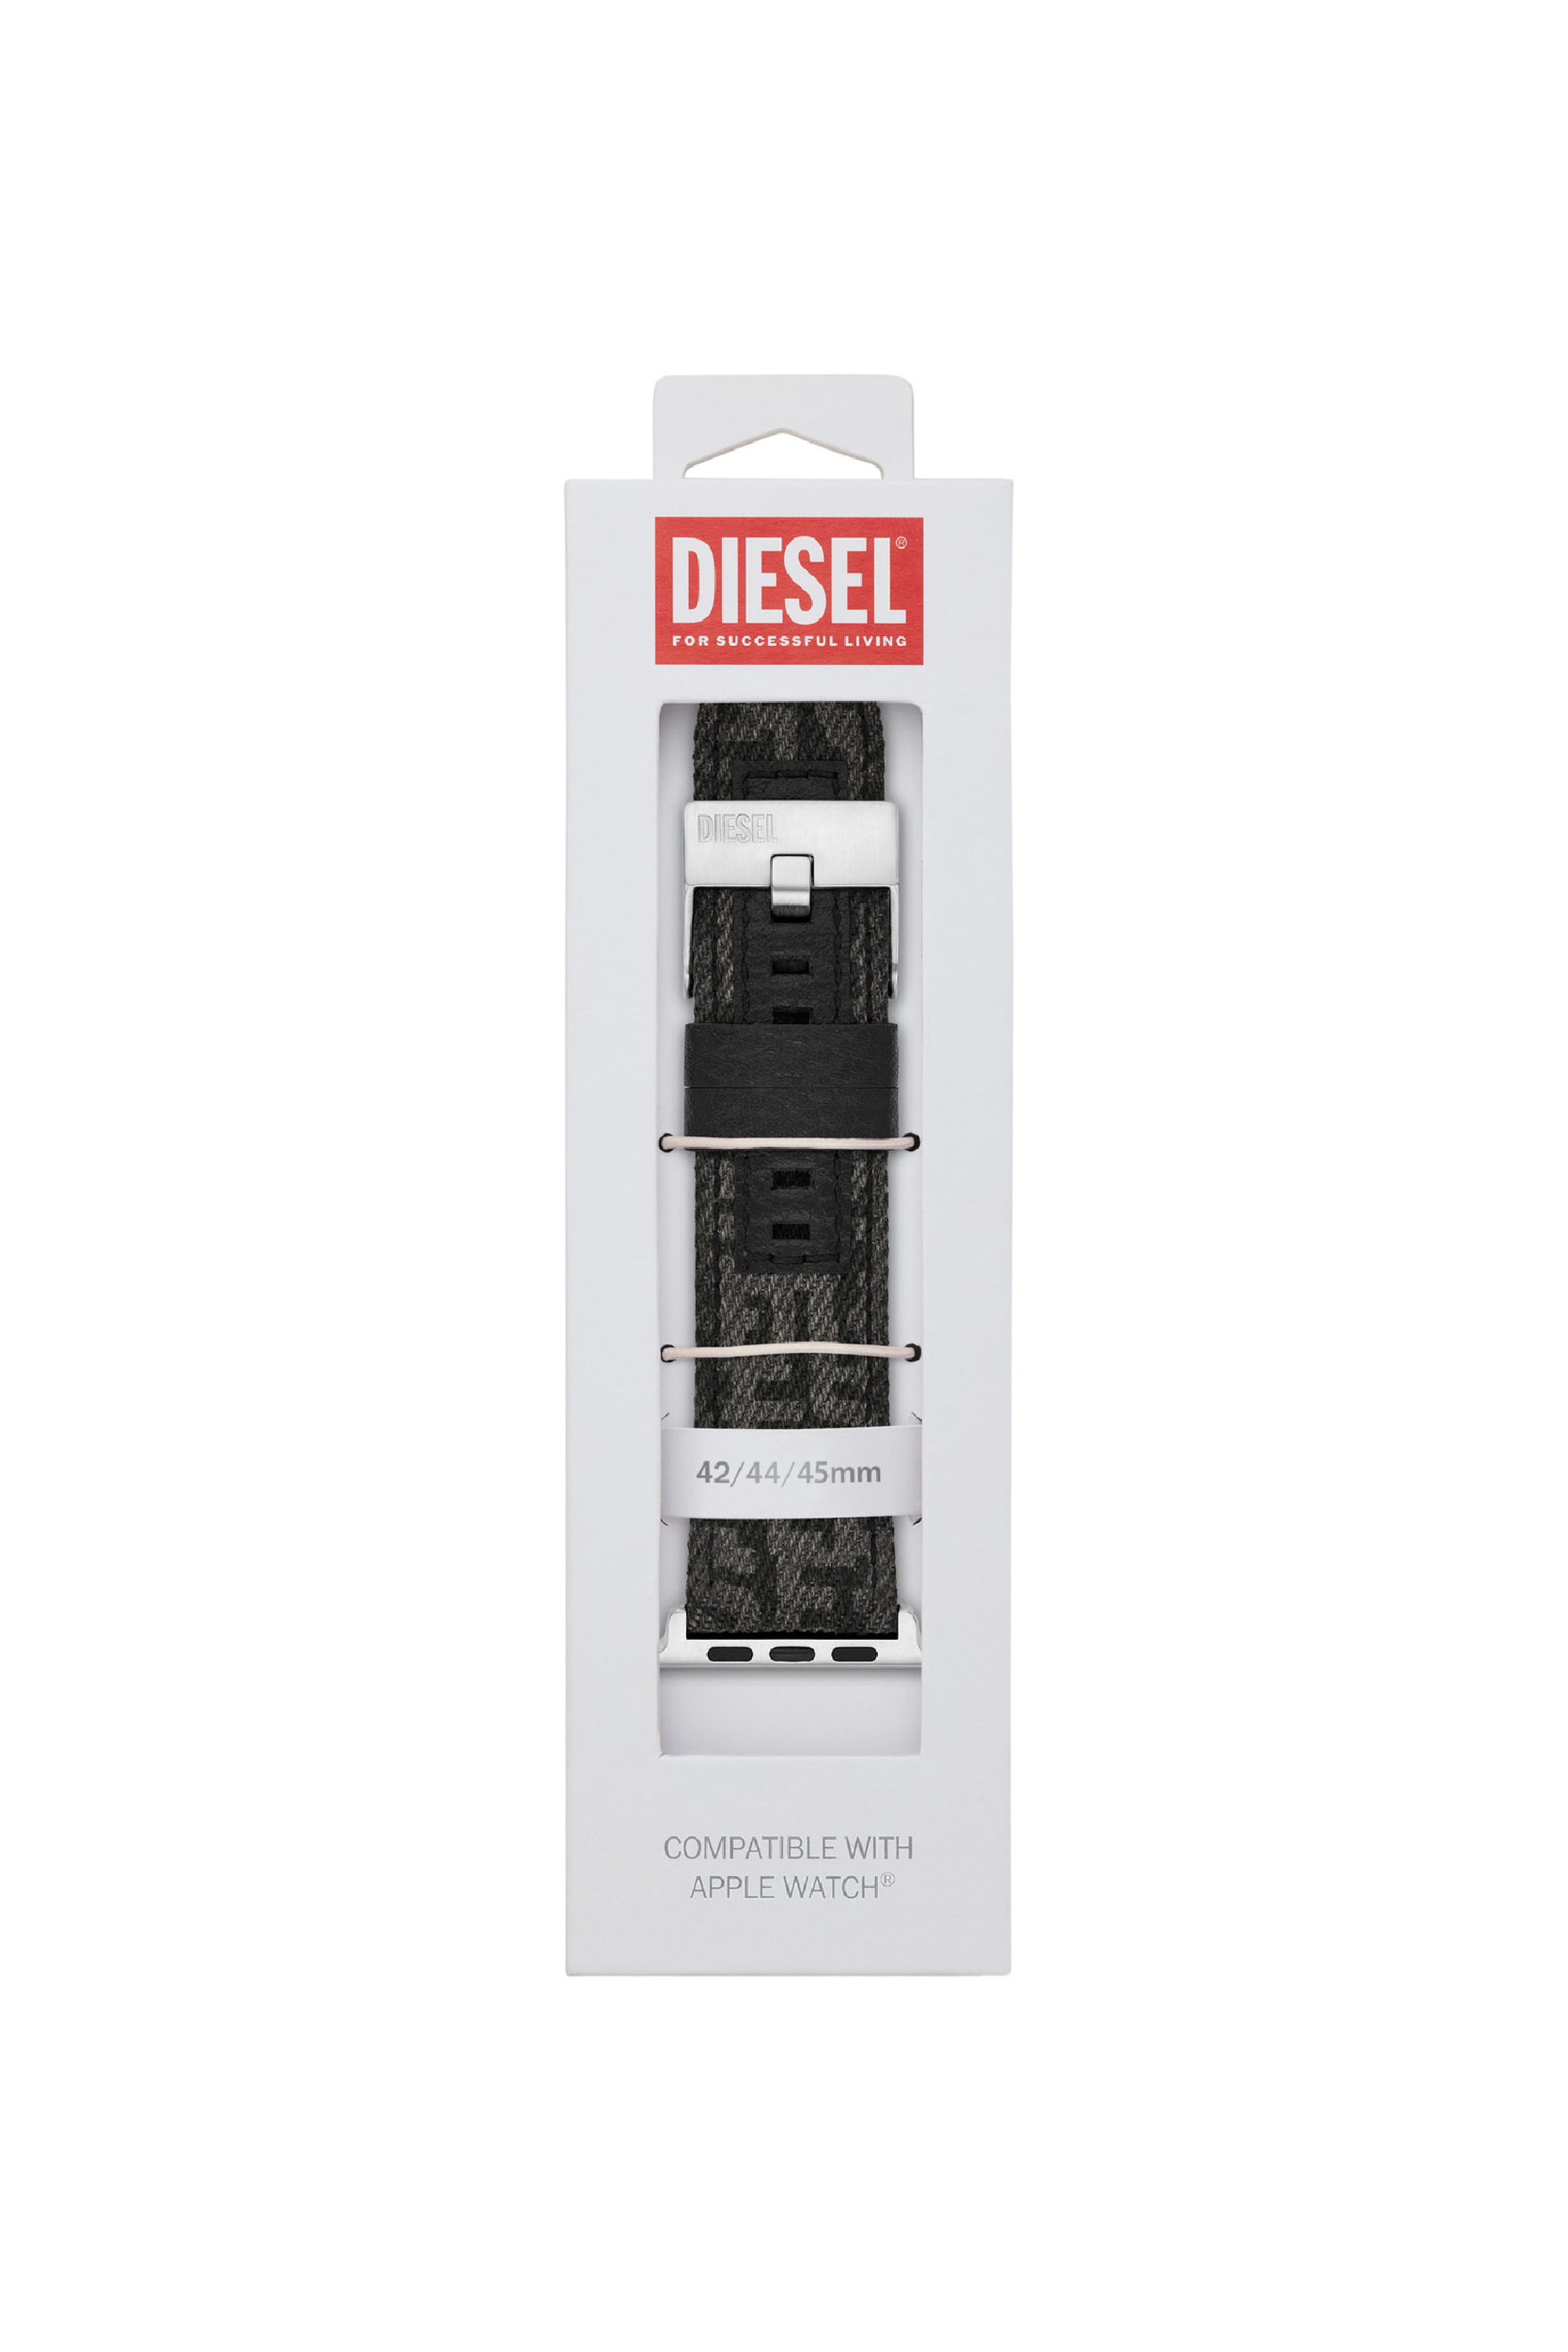 Diesel - DSS0012, Schwarz - Image 2